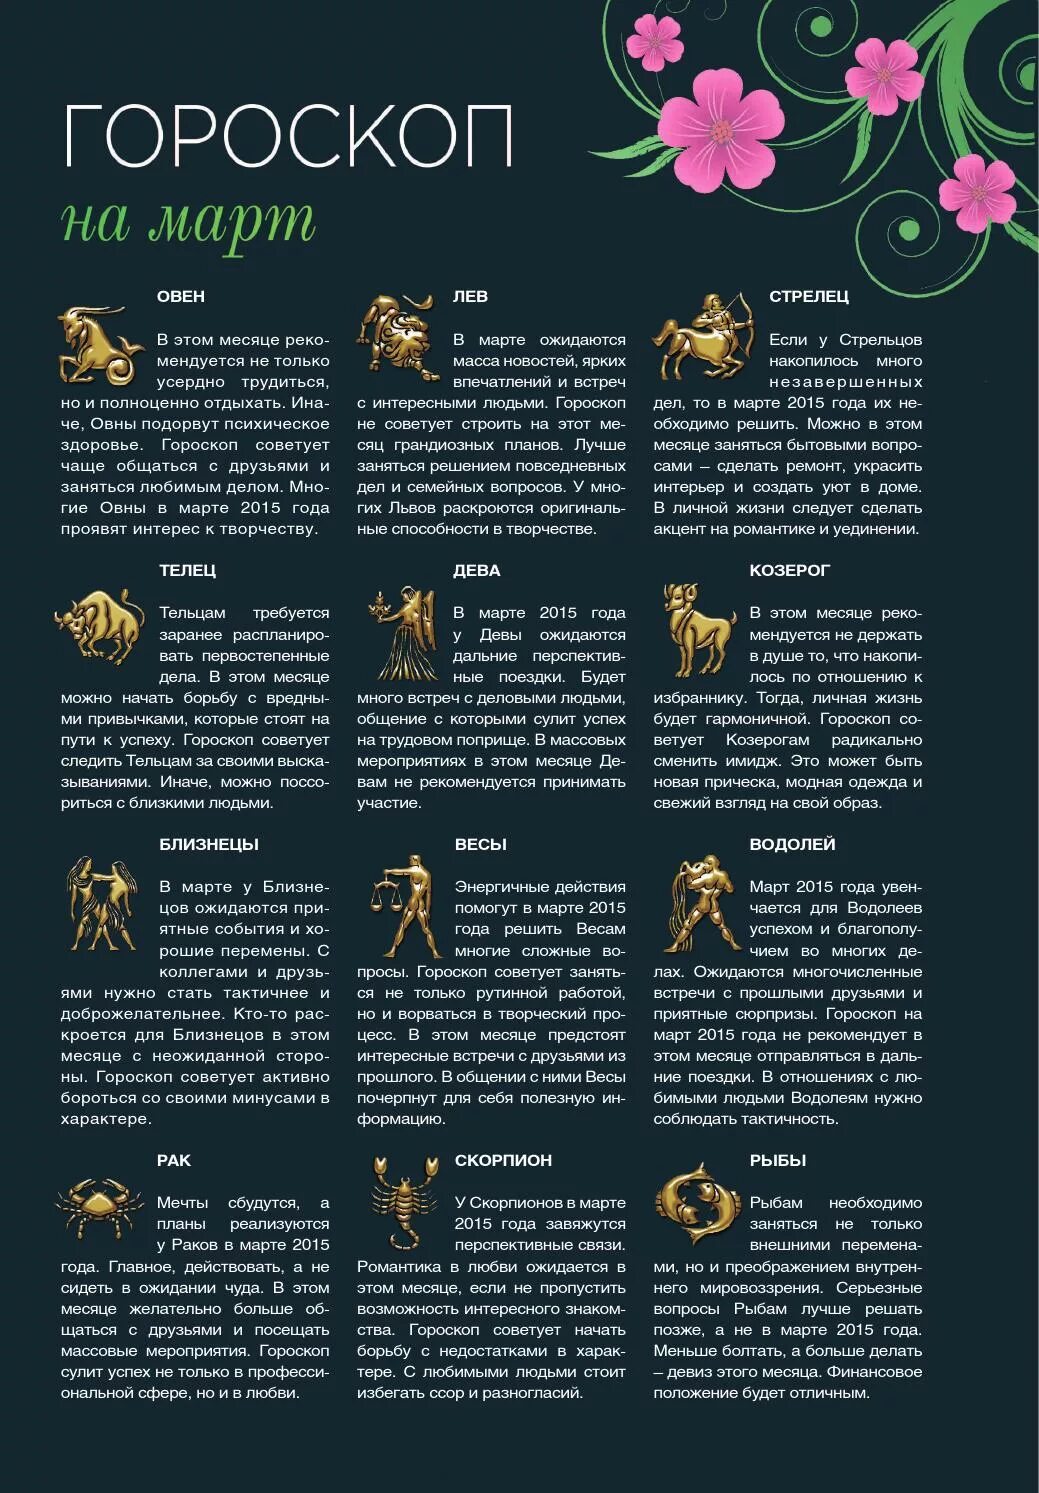 Гороскоп. Интересный гороскоп. Интересное про знаки зодиака. Картинки с описанием знаков зодиака. Гороскопы на май месяц года